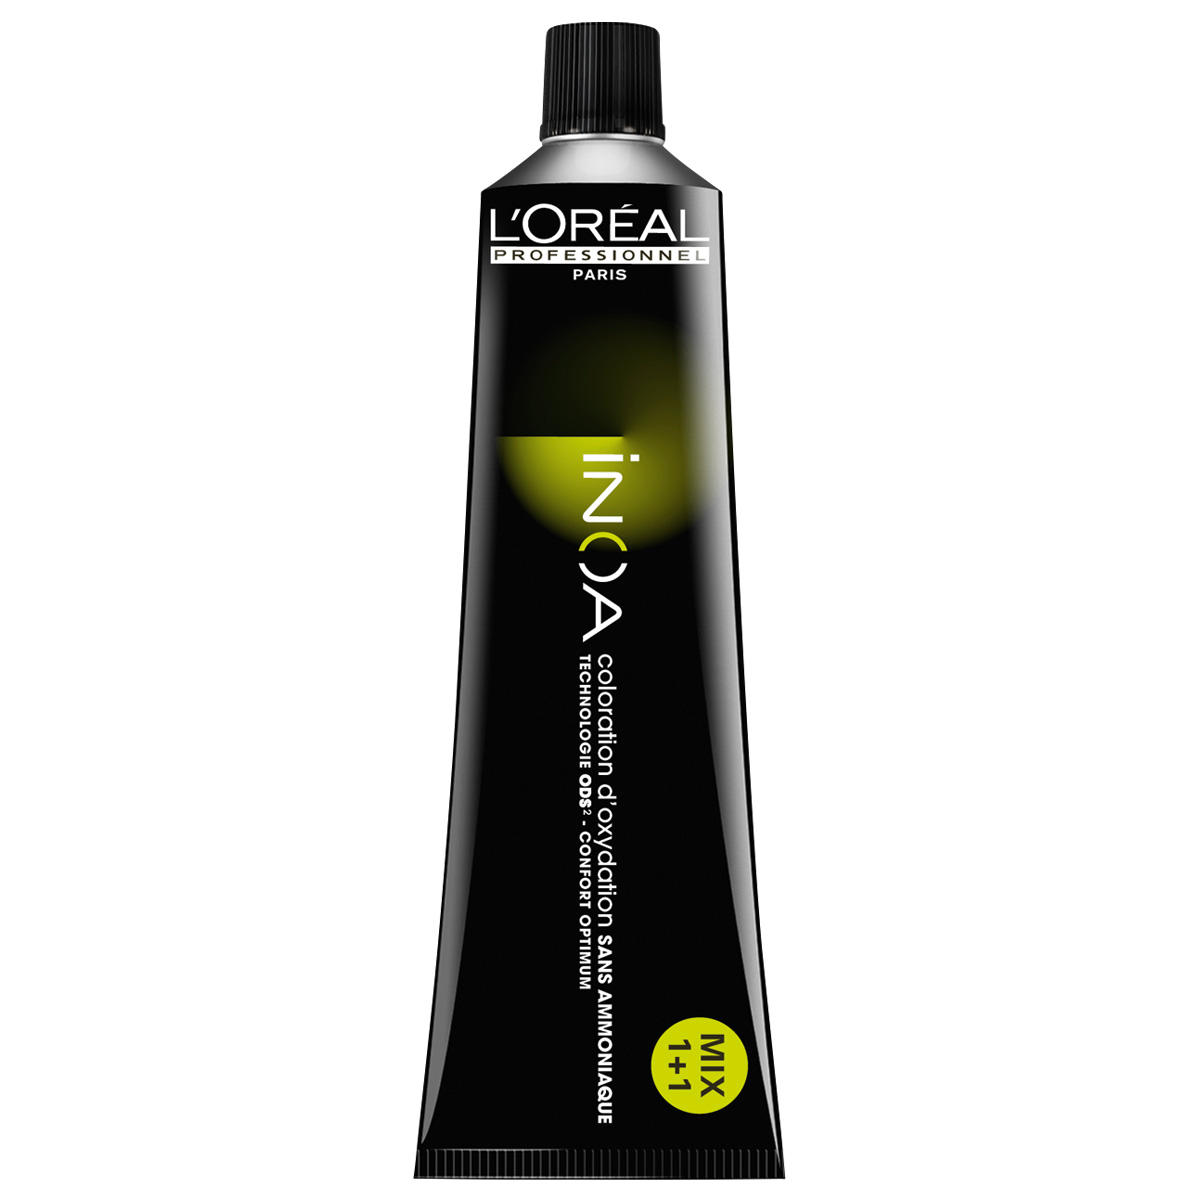 L'Oréal Professionnel Paris Coloration Mixton Green, Tubo 60 ml